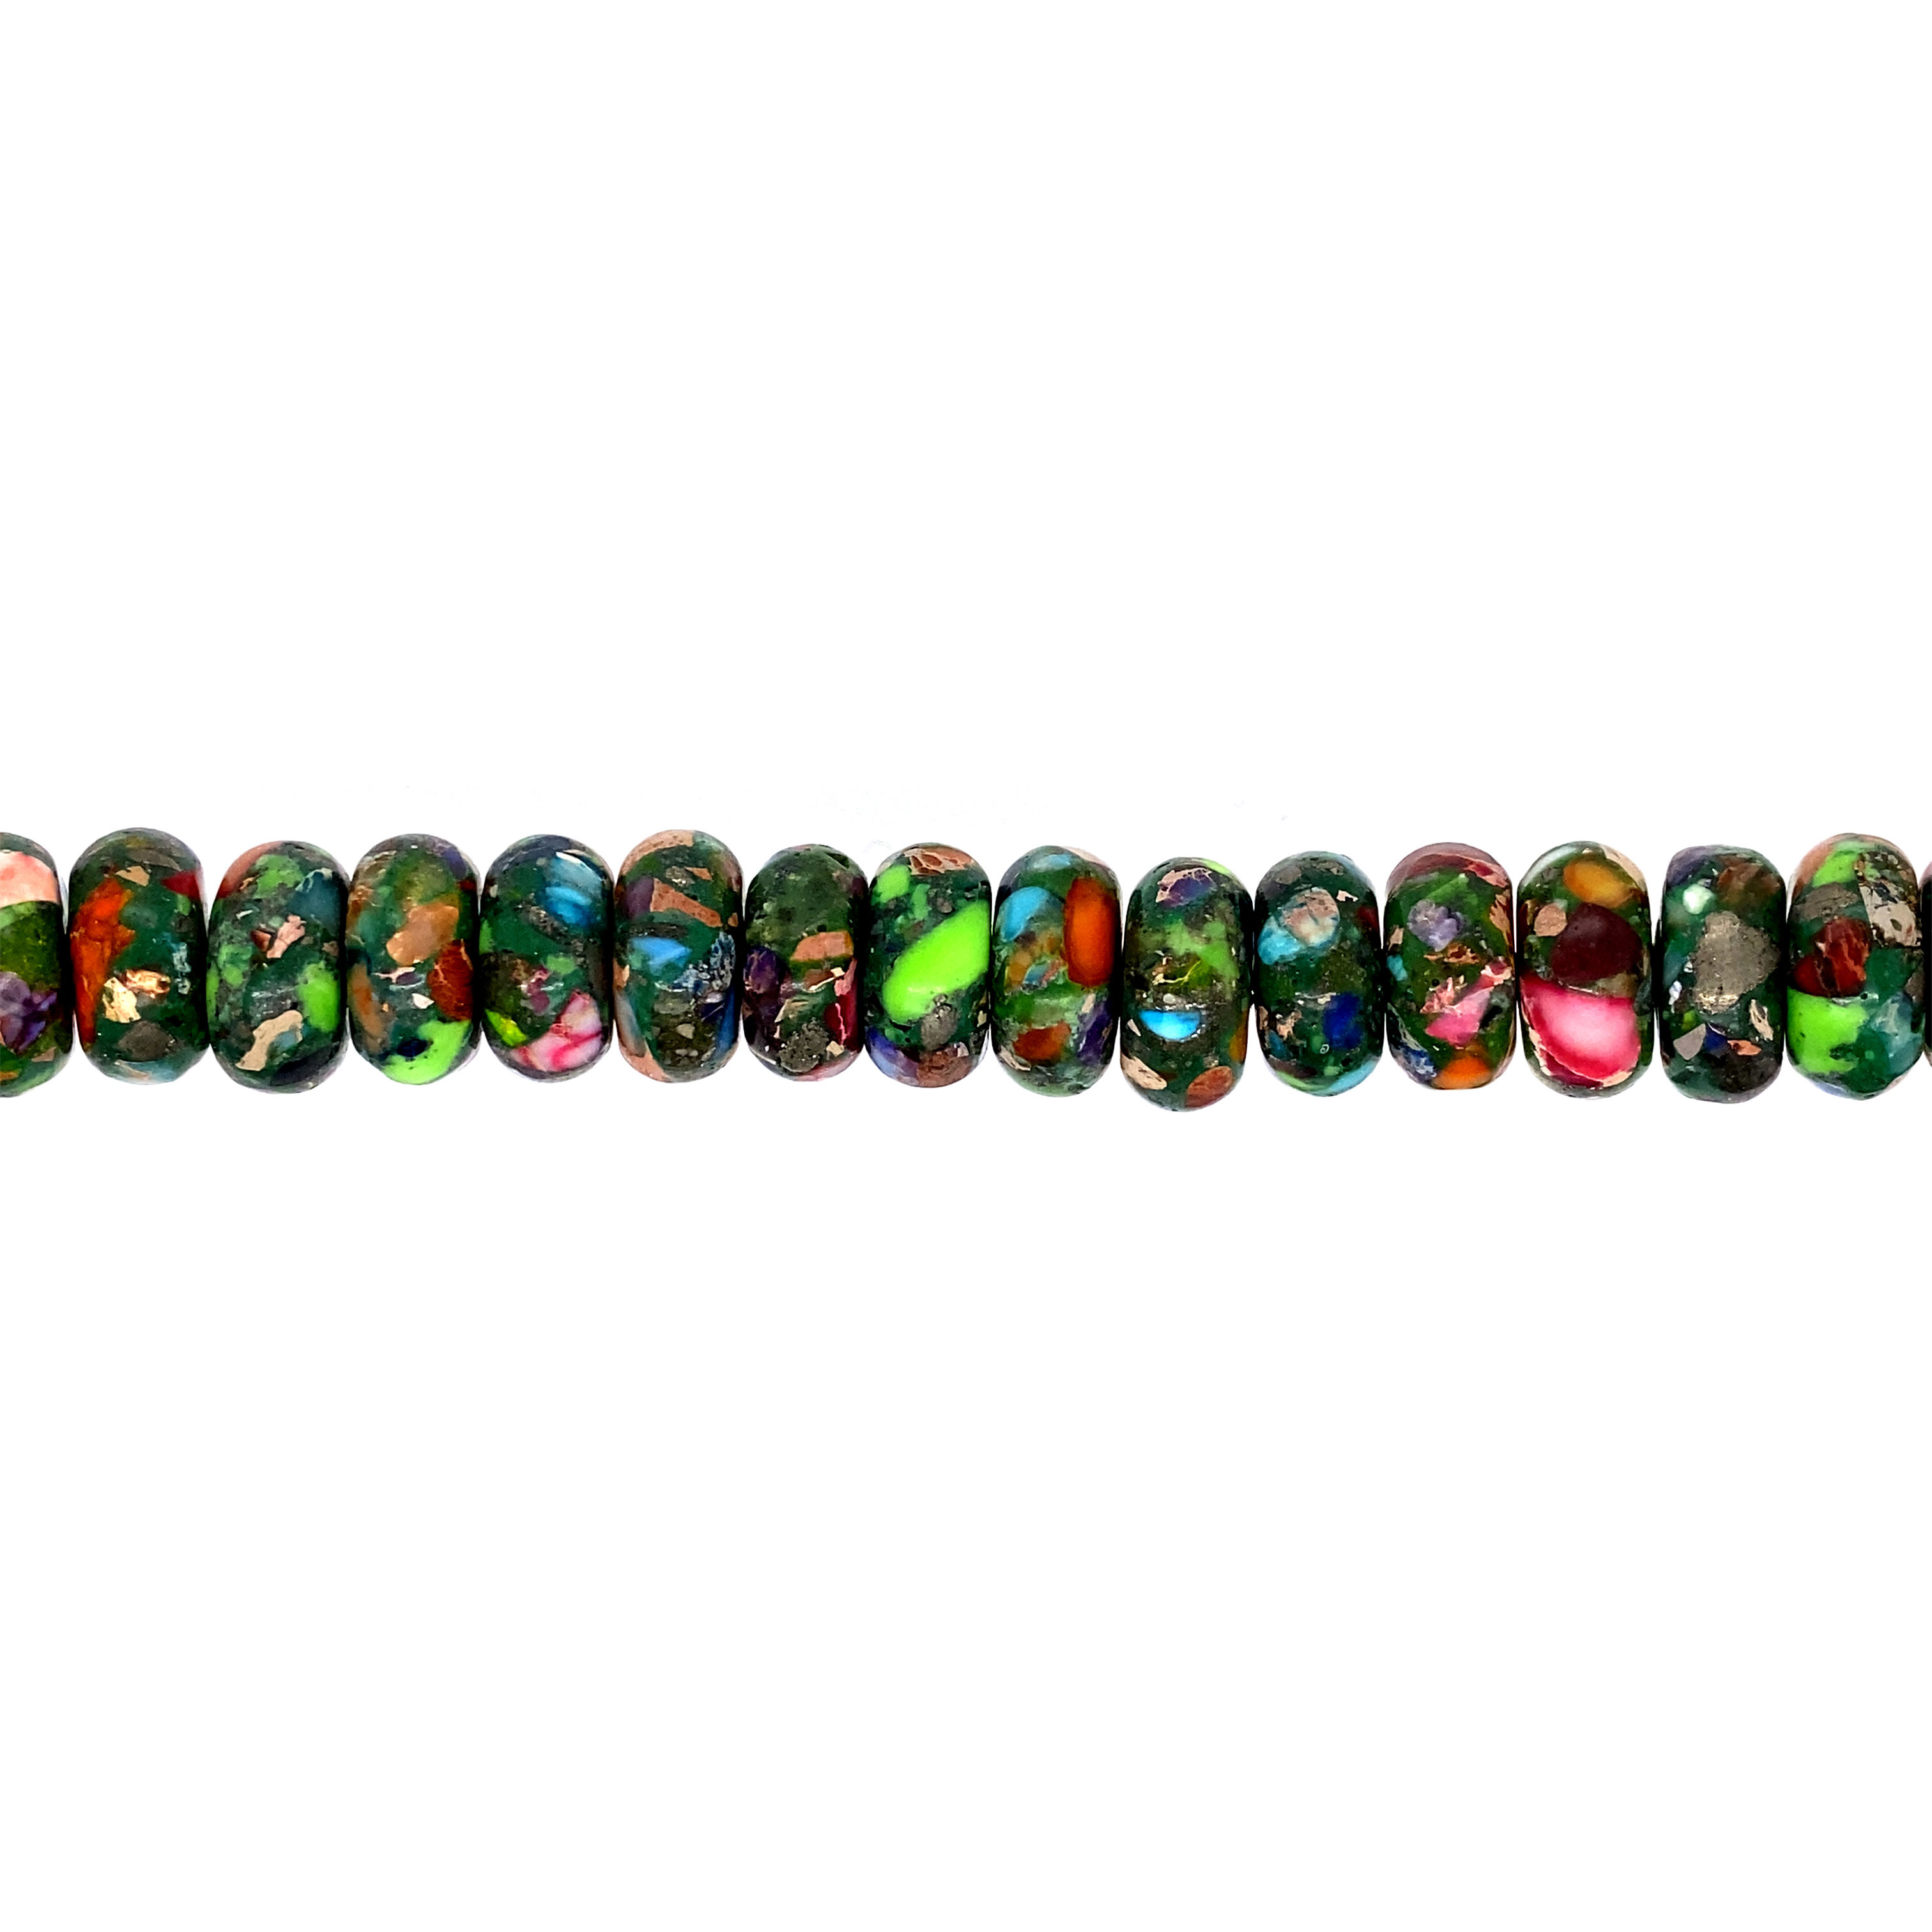 7x12mm Multicolor Impression Jasper - Rondelle